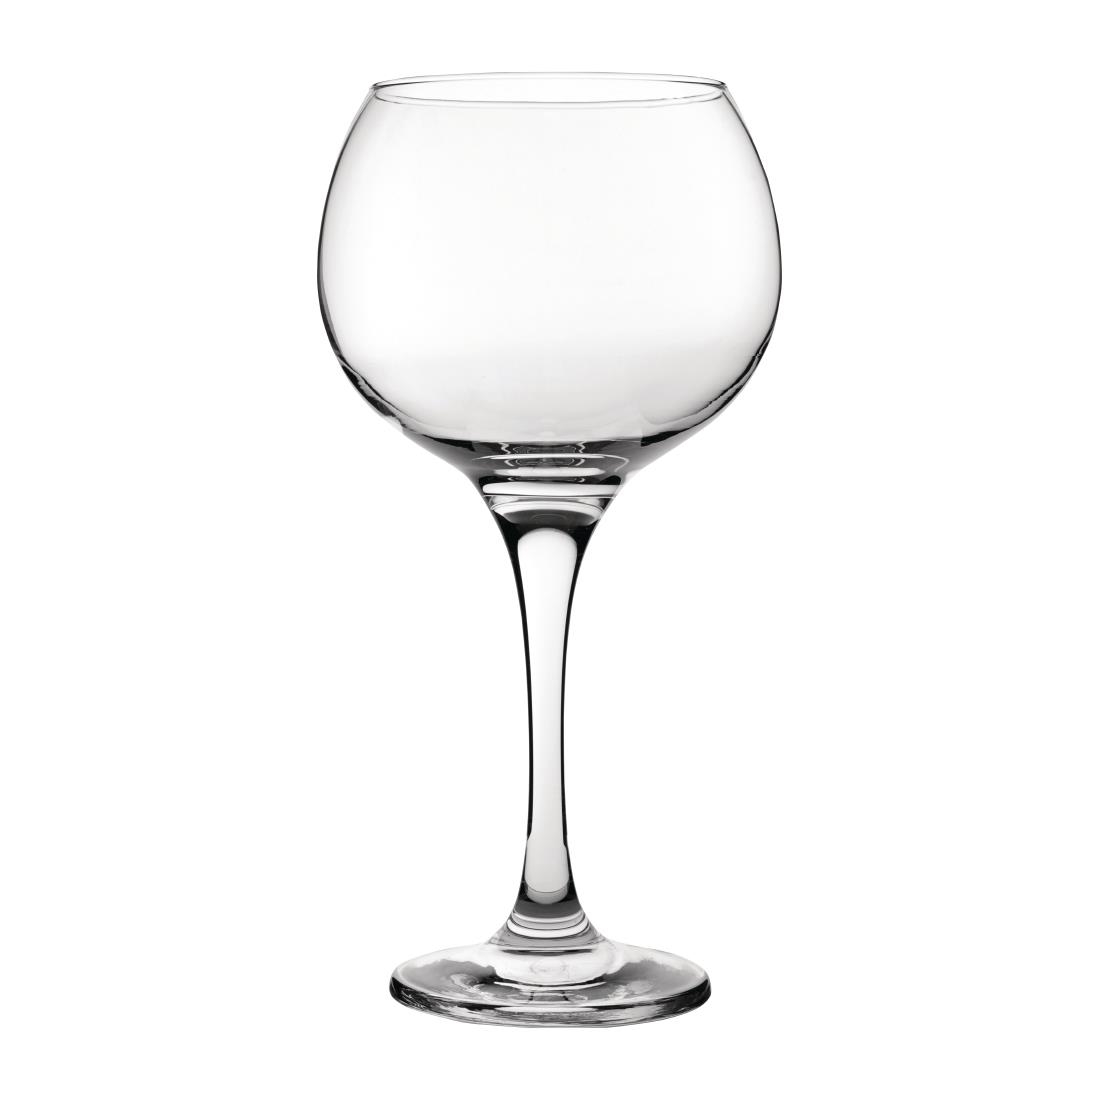 vergroting attent Ten einde raad Online Utopia Ambassador gin tonic glazen 79cl (6 stuks) kopen / bestellen